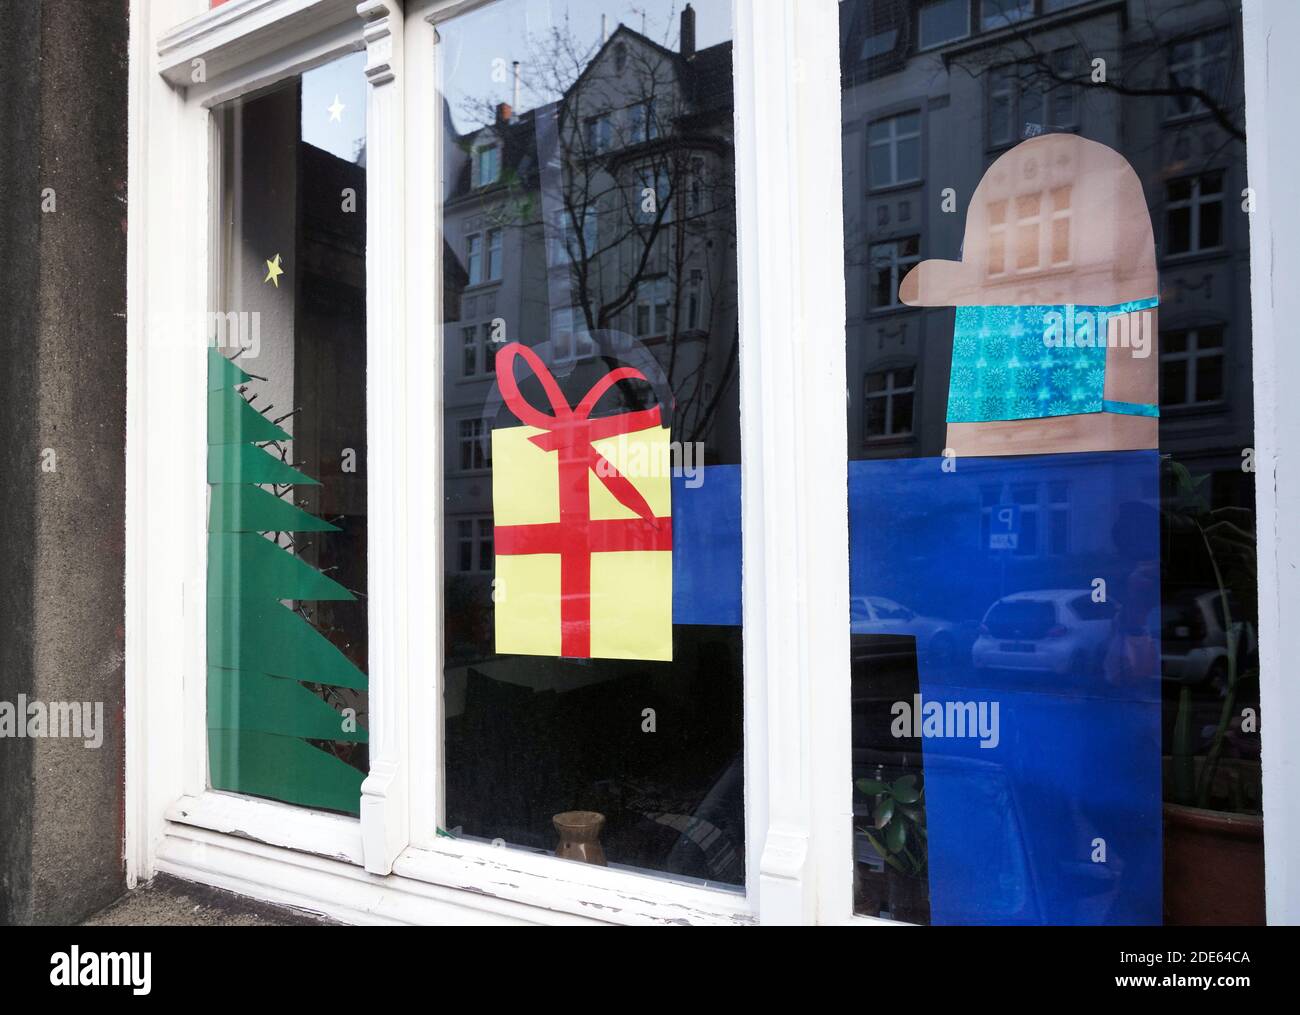 Dortmund, Alemania, 29 de noviembre de 2020: La ventana del apartamento decorada para Navidad se refiere a la víspera de Navidad en Corona Times. El hombre que da el regalo lleva la protección de la boca y la nariz contra el virus. Foto de stock